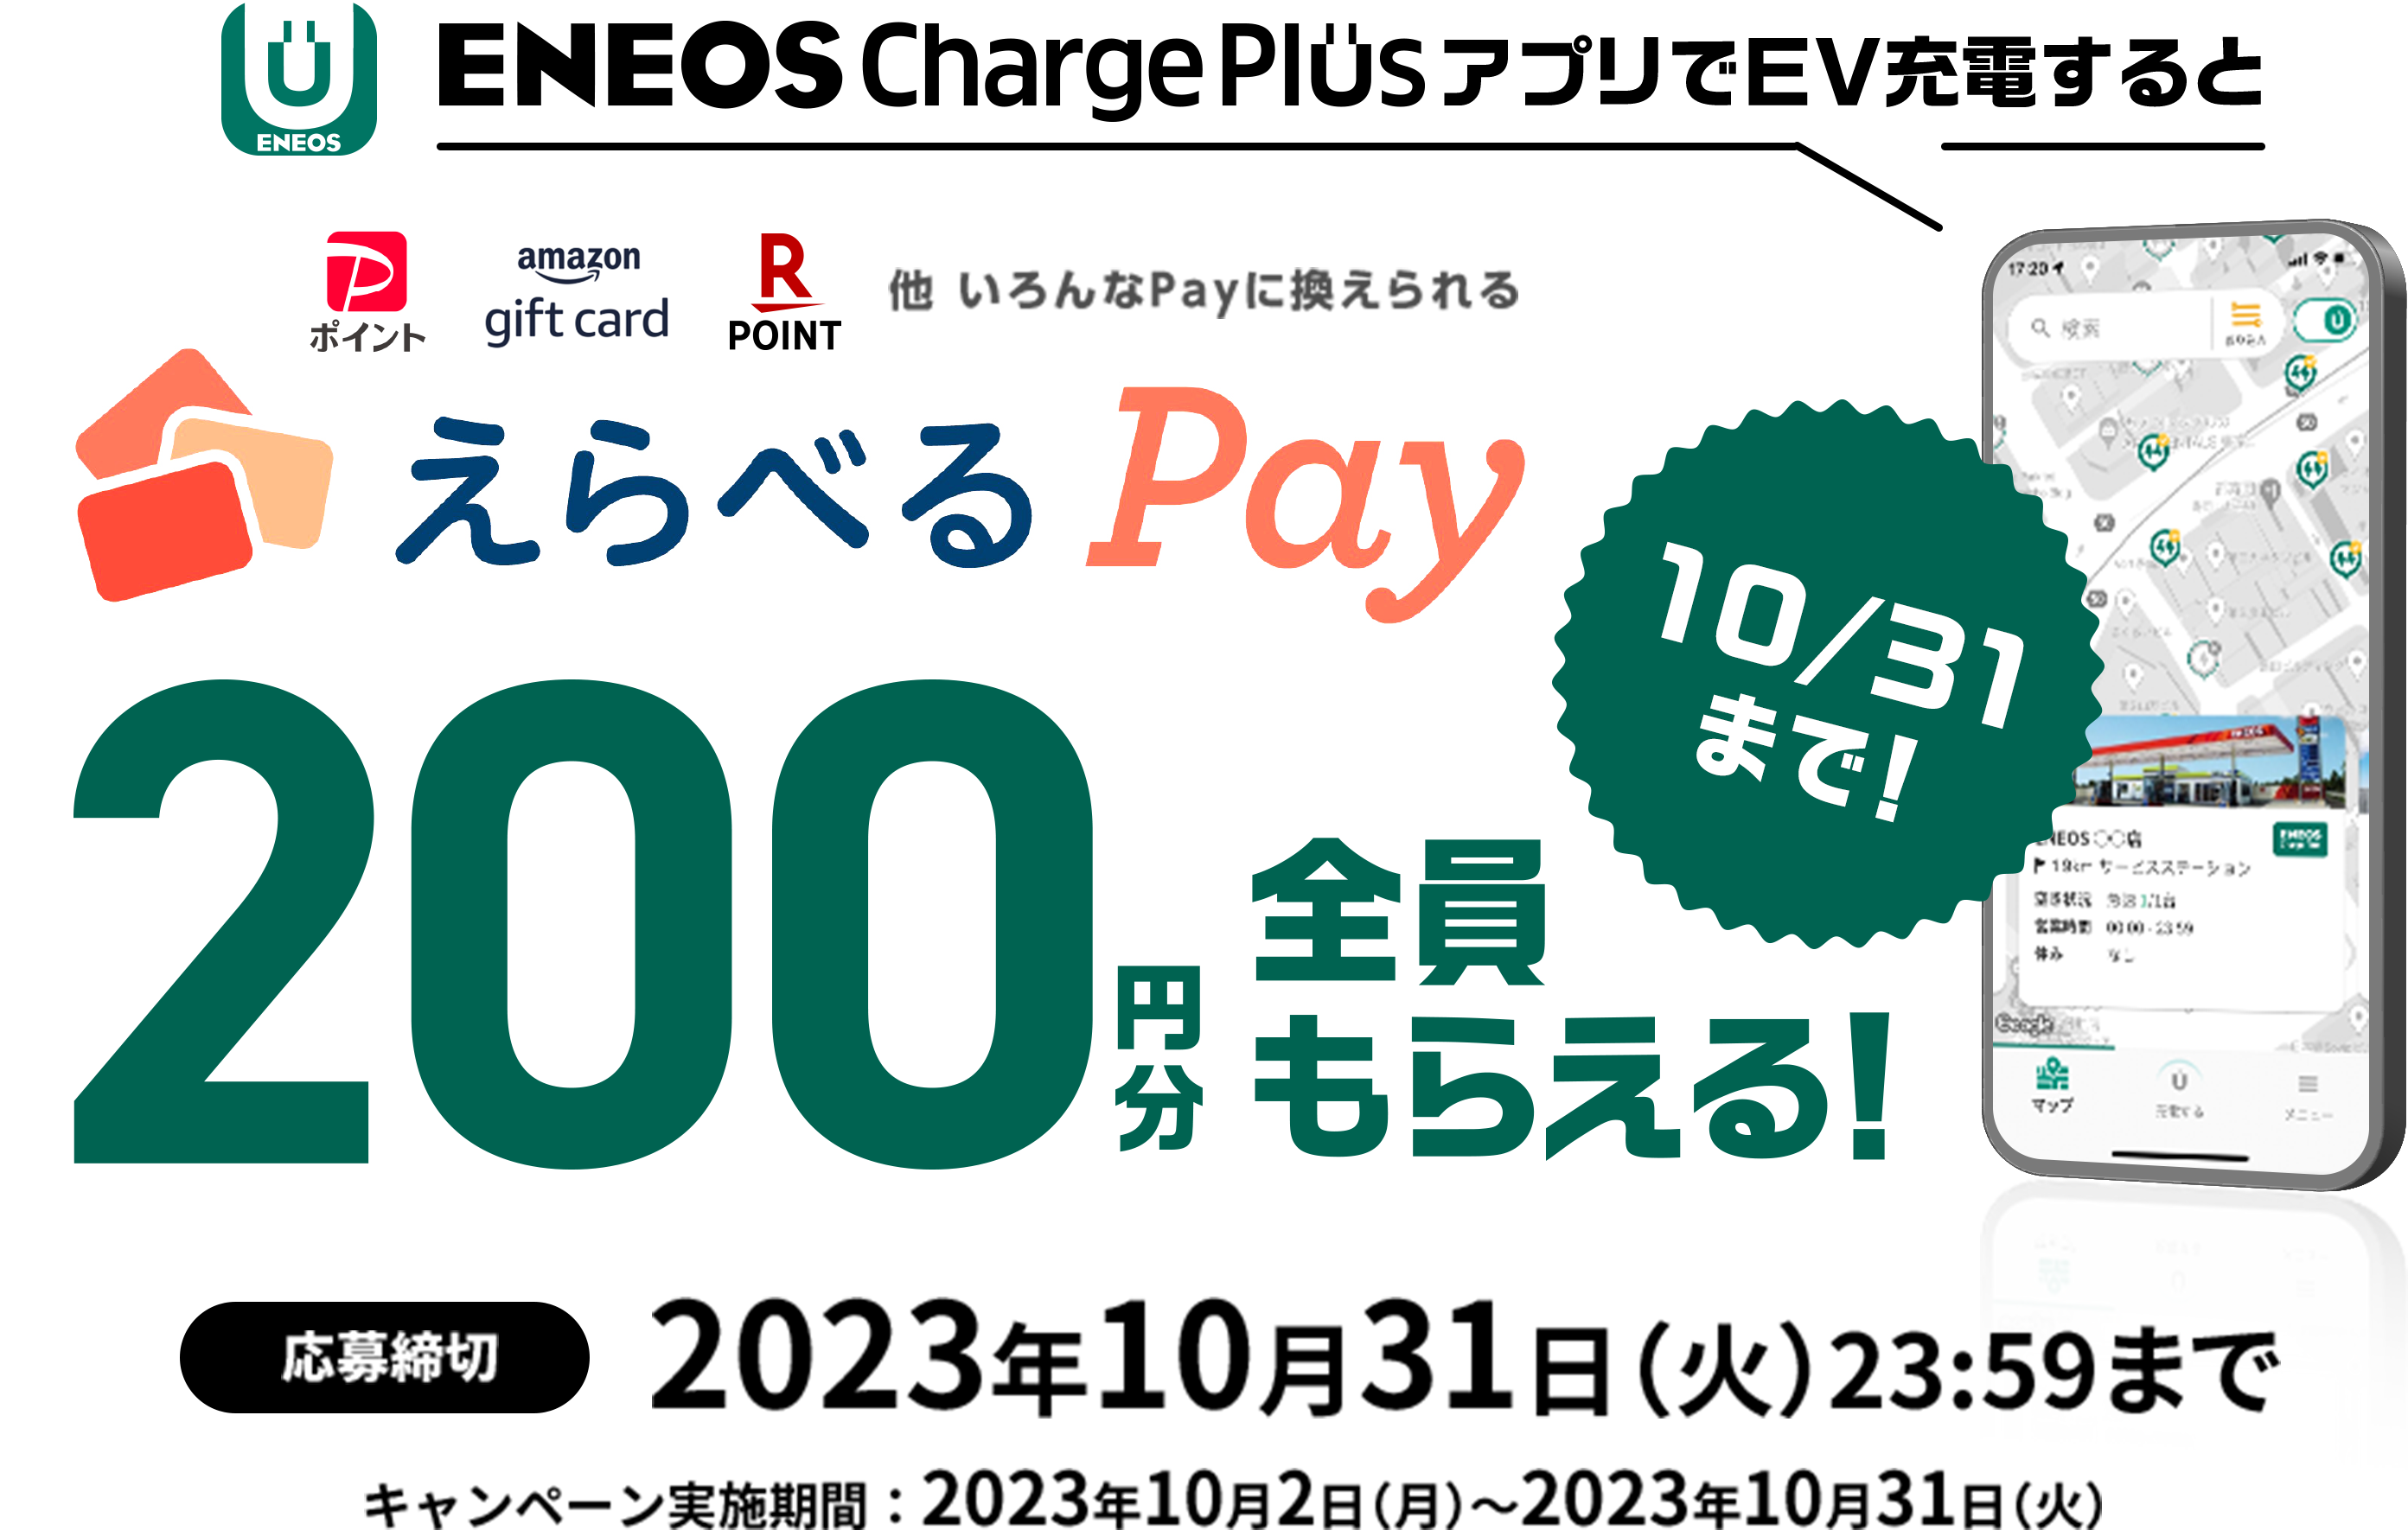 ENEOS Charge PlusアプリでＥＶ充電するとえらべるがPay200円分全員もらえる